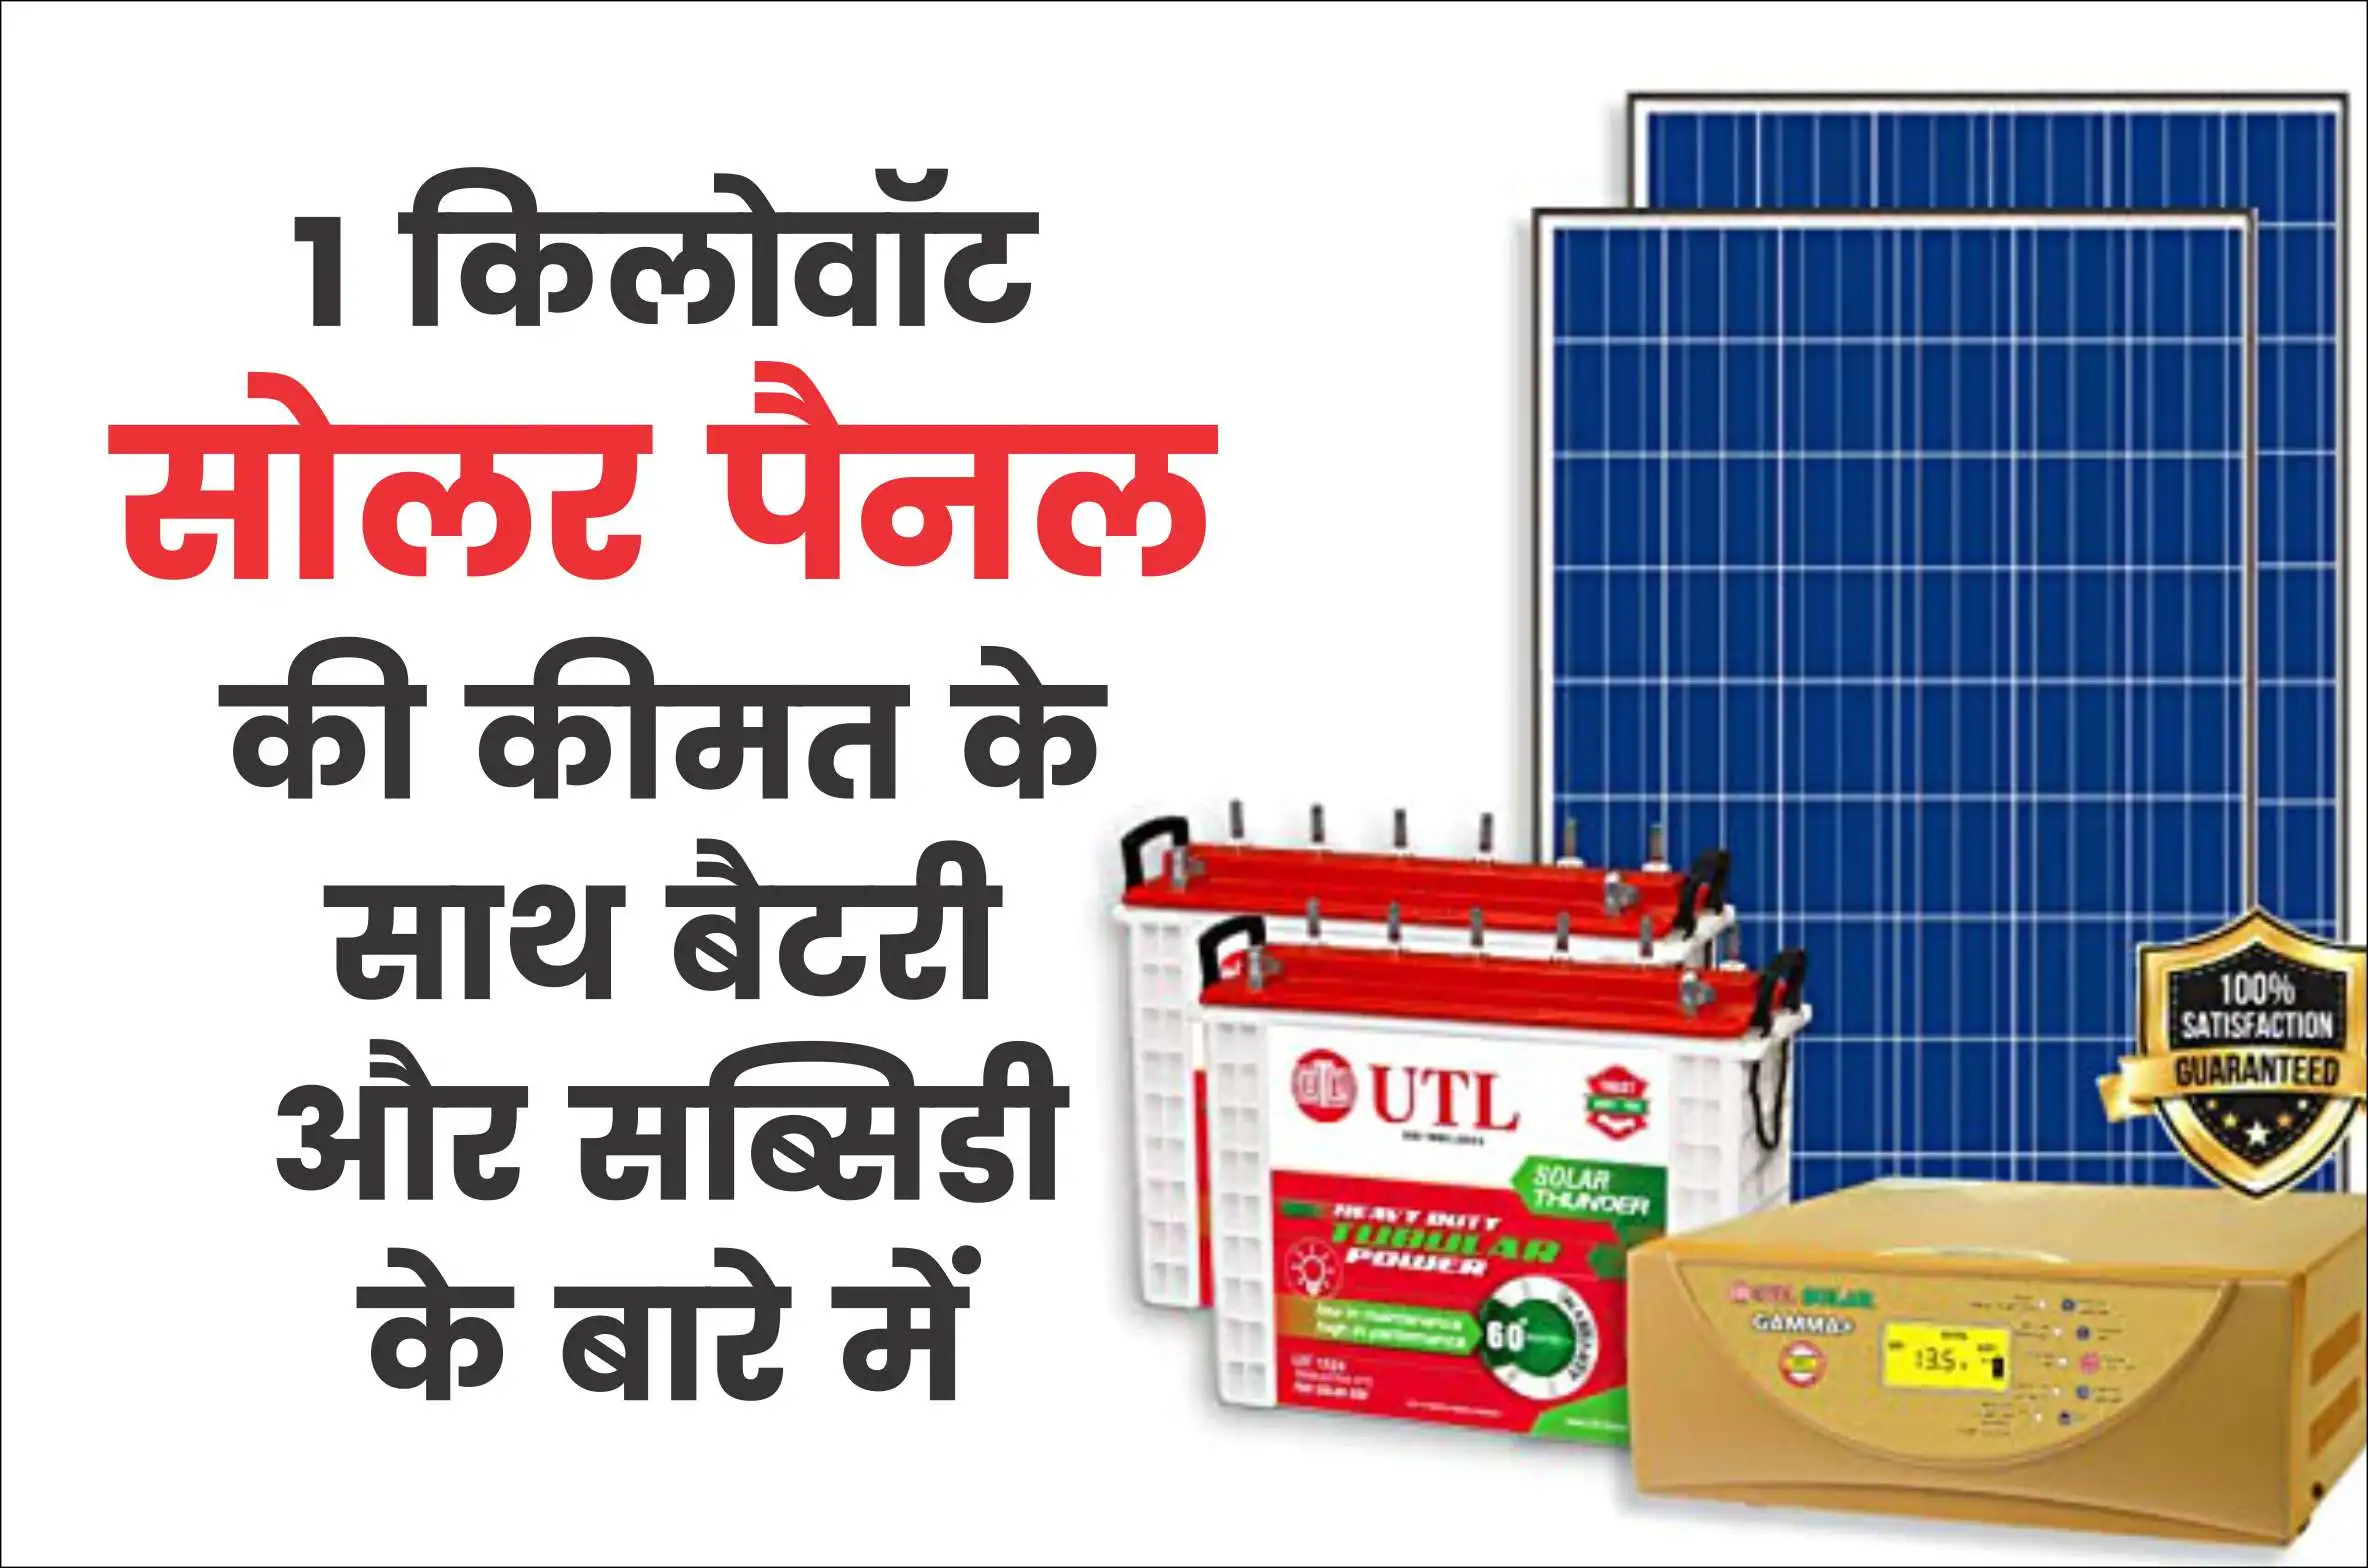 1 kw solar price and Subsidy 1 किलोवॉट सोलर पैनल की कीमत के साथ बैटरी और सब्सिडी के बारे में